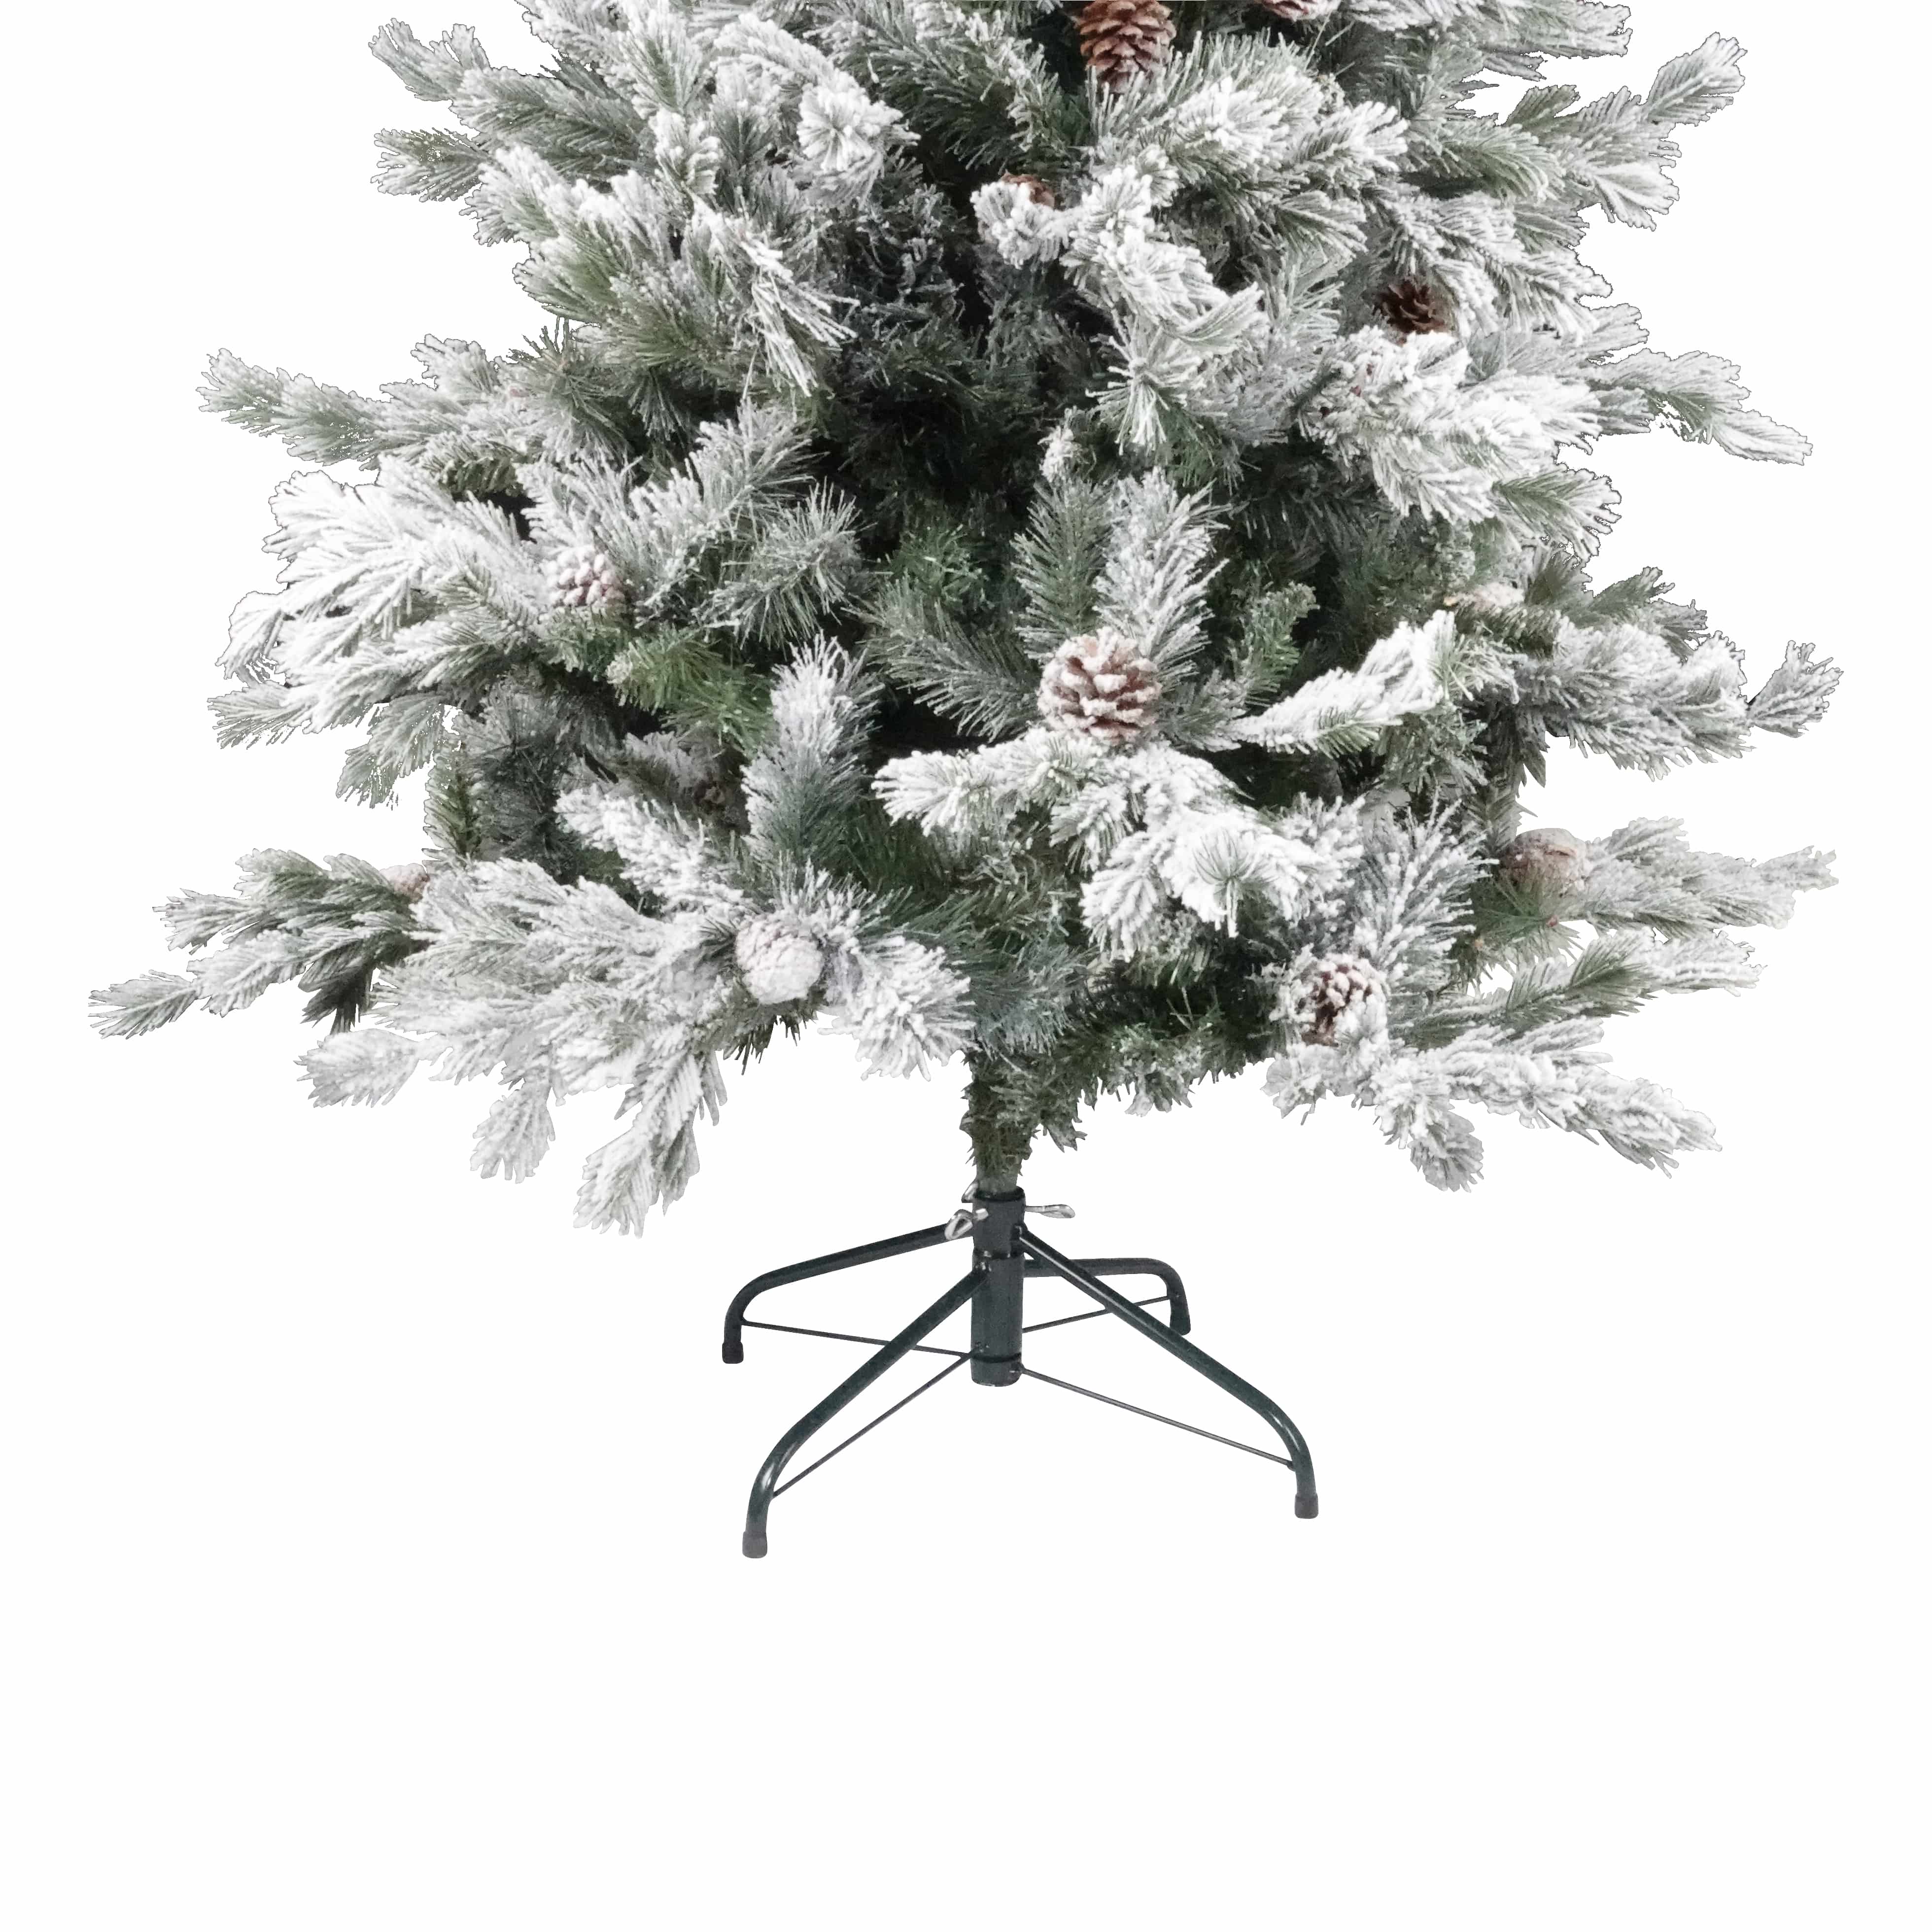 4goodz Superior kunstkerstboom met sneeuw Snowy Youkon 210 cm